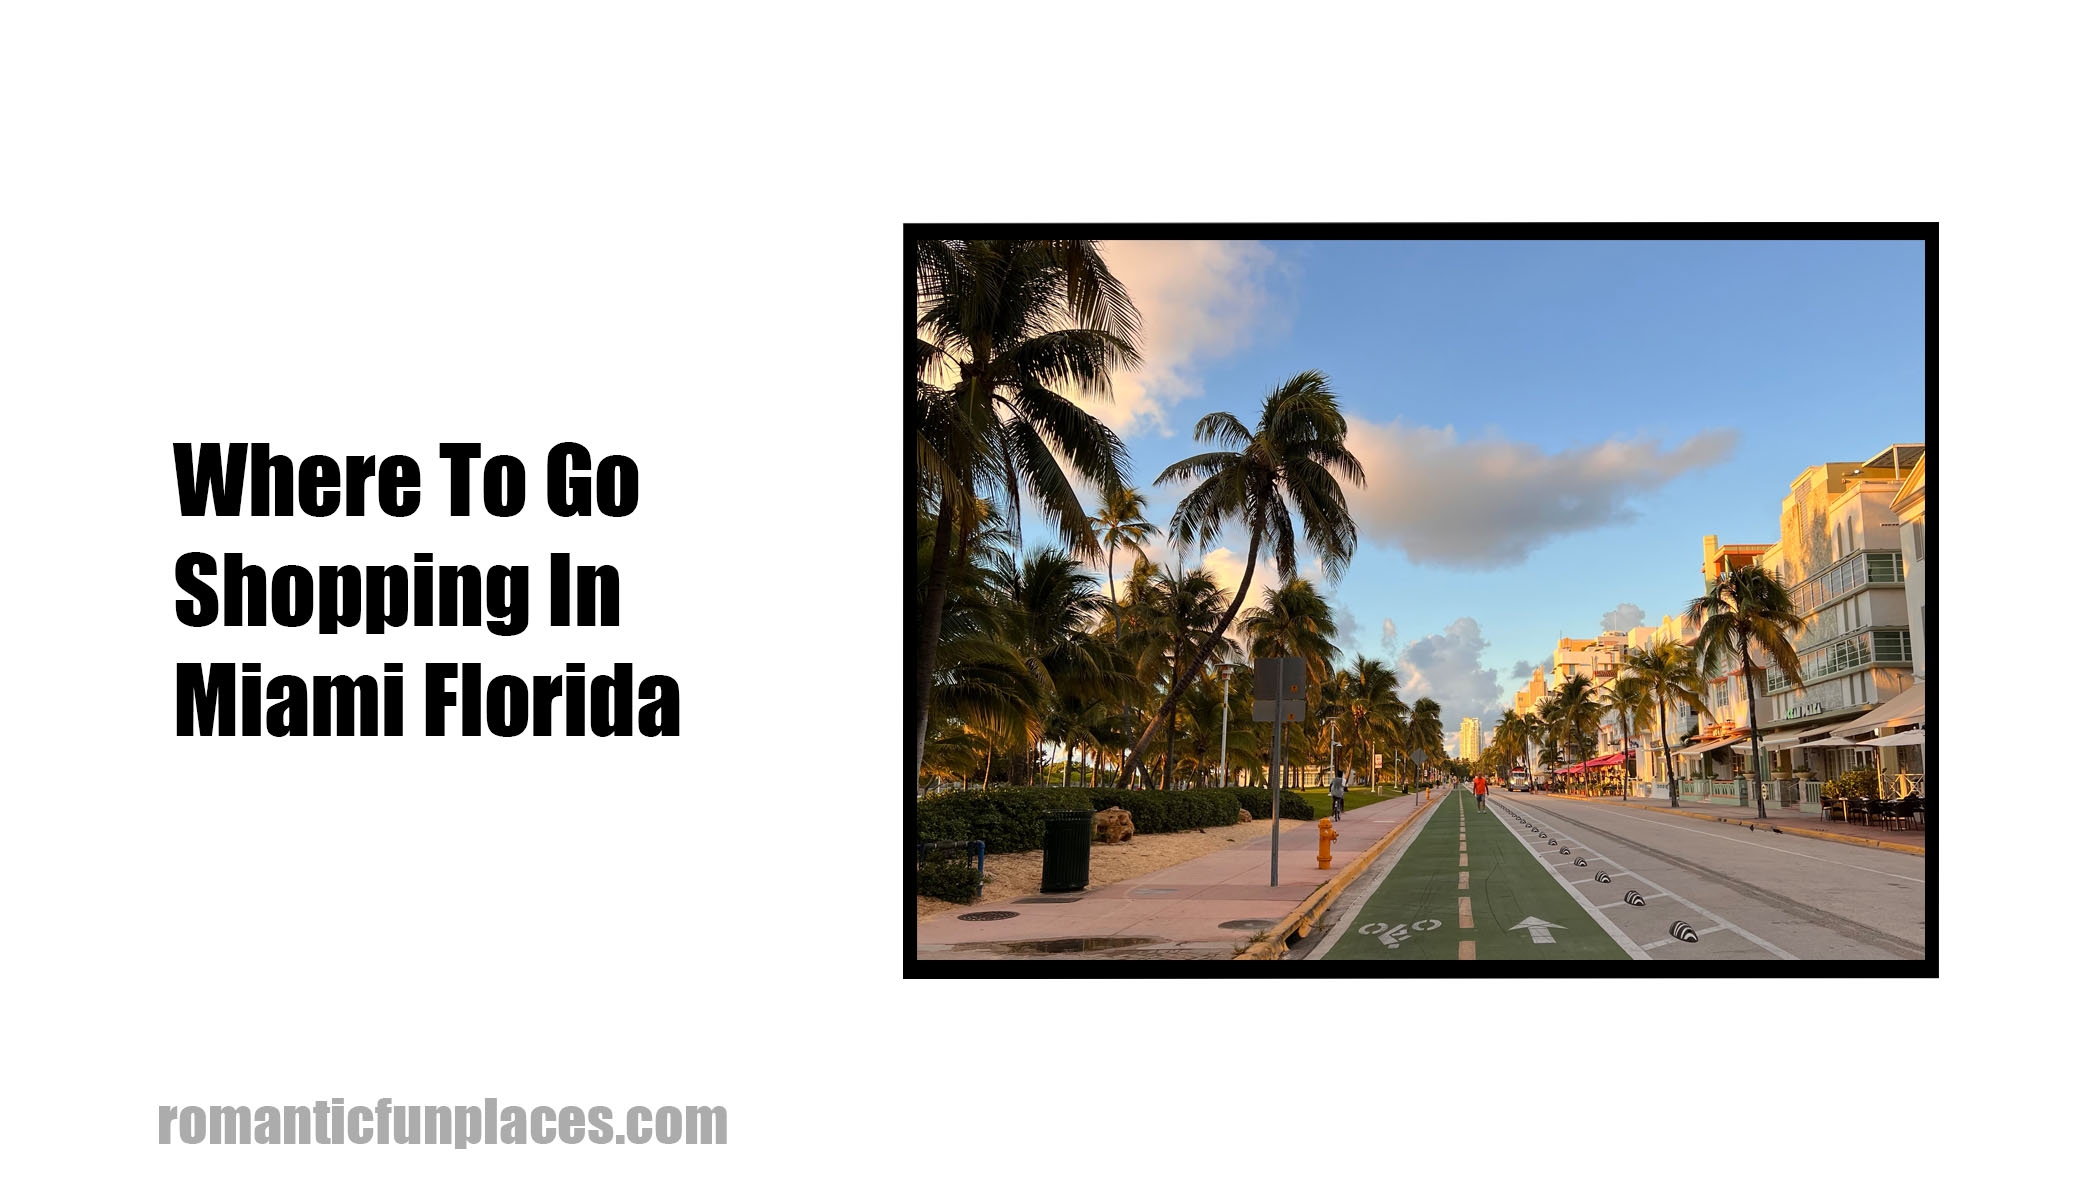 Where To Go Shopping In Miami Florida